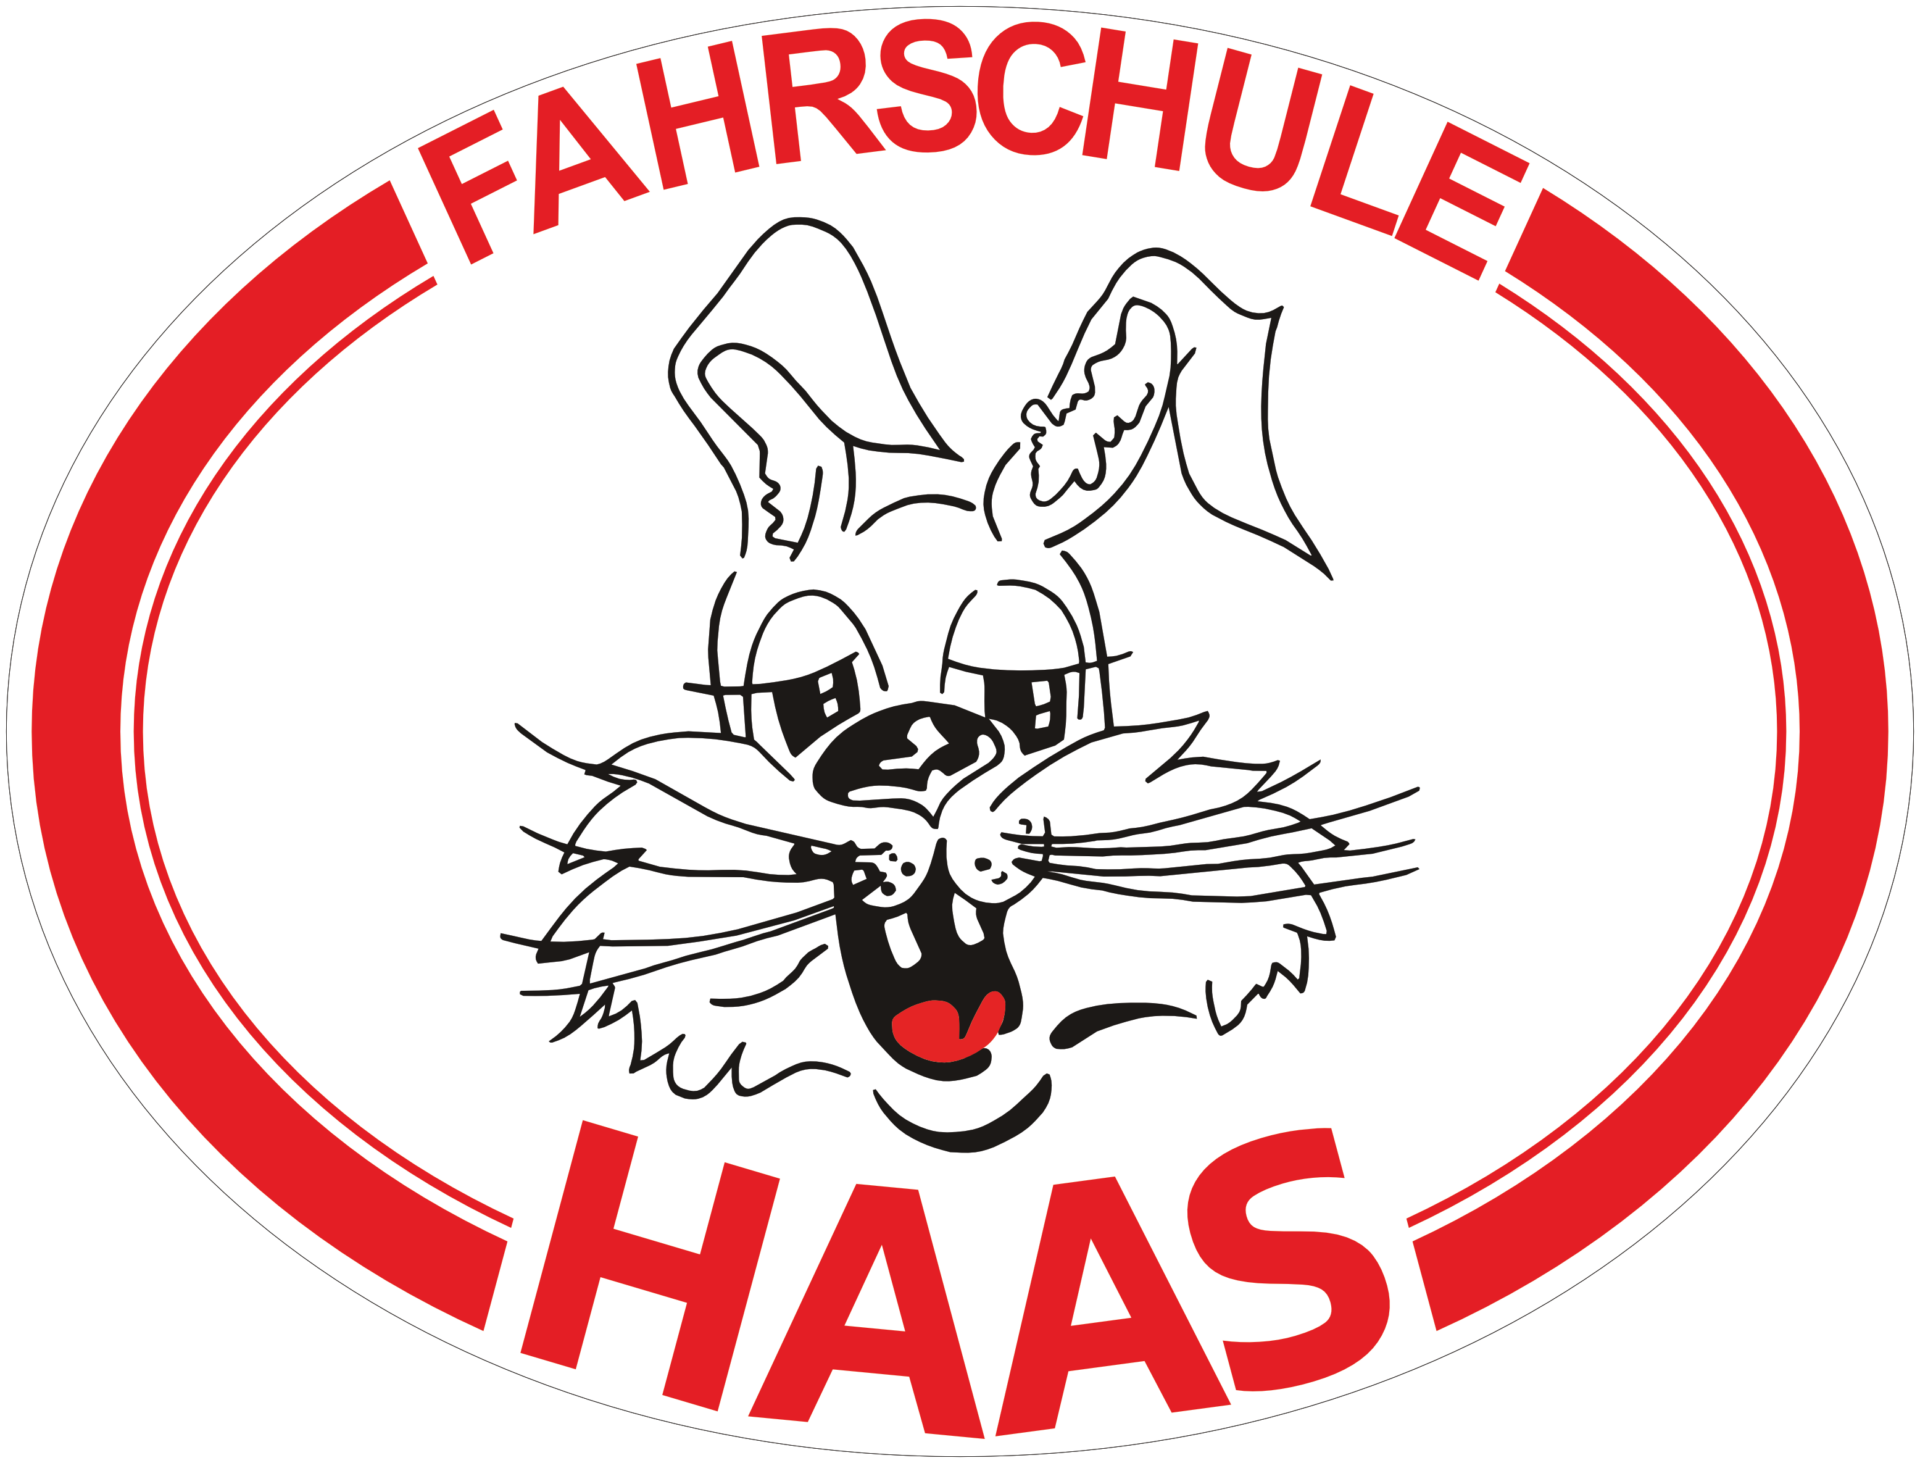 (c) Fahrschule-haas.de